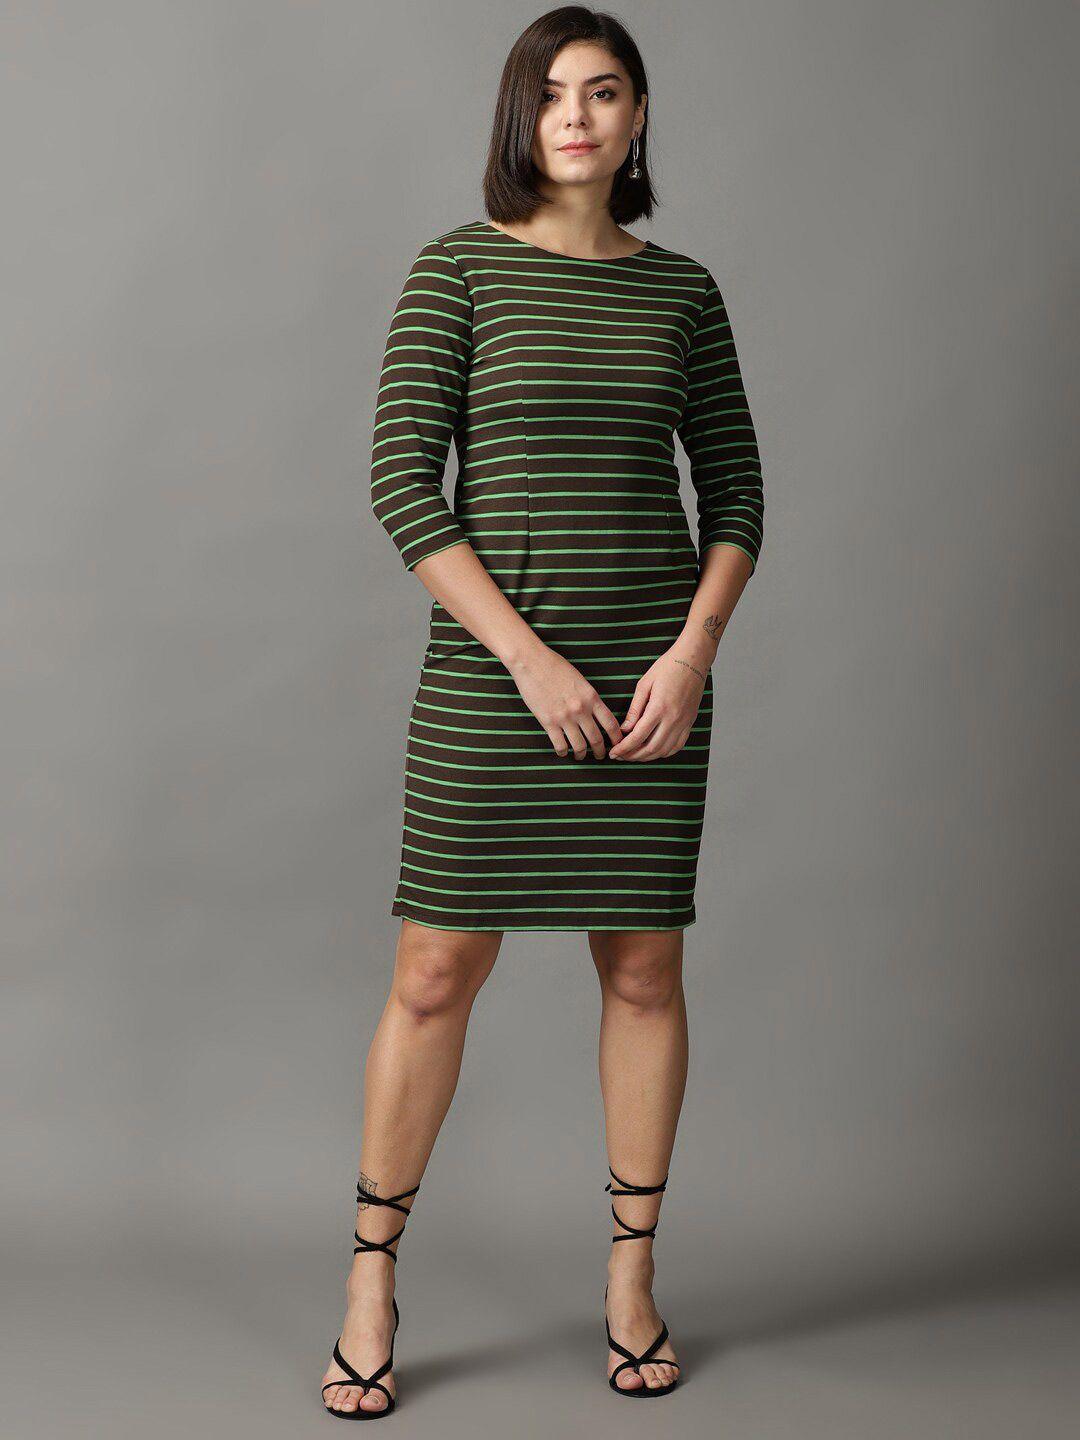 showoff-striped-acrylic-sheath-dress